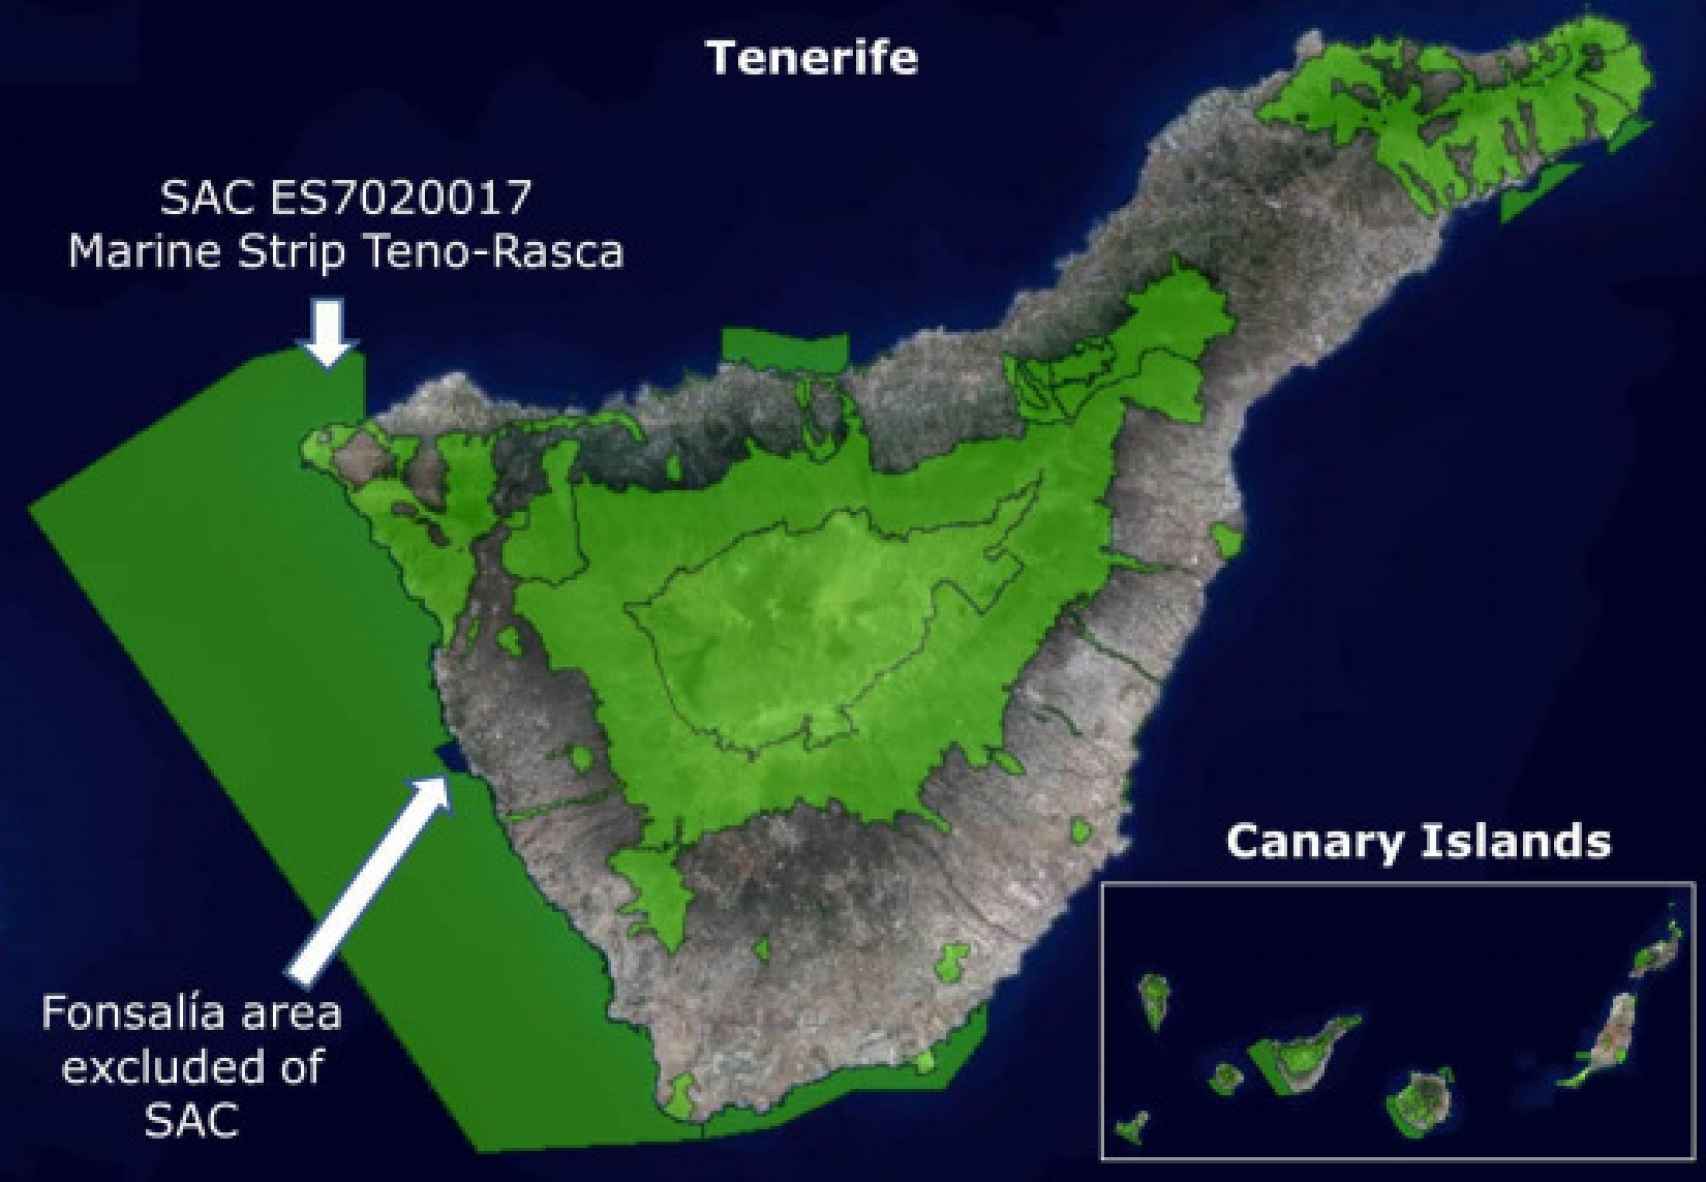 La Franja Marina Teno-Rasca, Zona de Especial Conservación (ZEC).